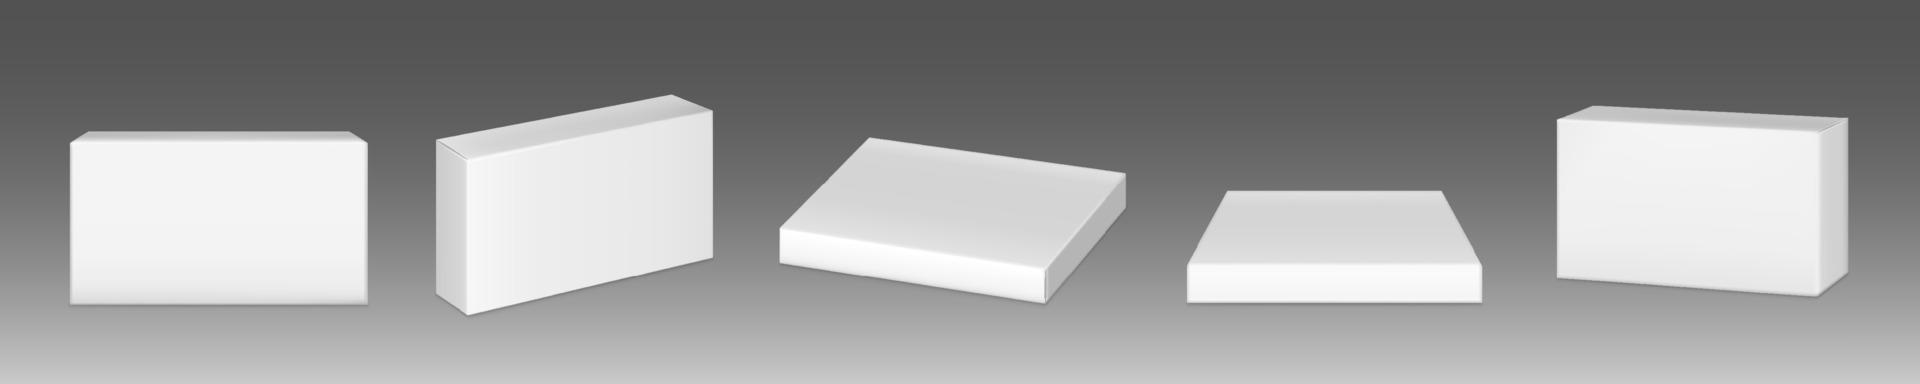 maqueta de paquete de papel, pastillero rectangular de cartón vector